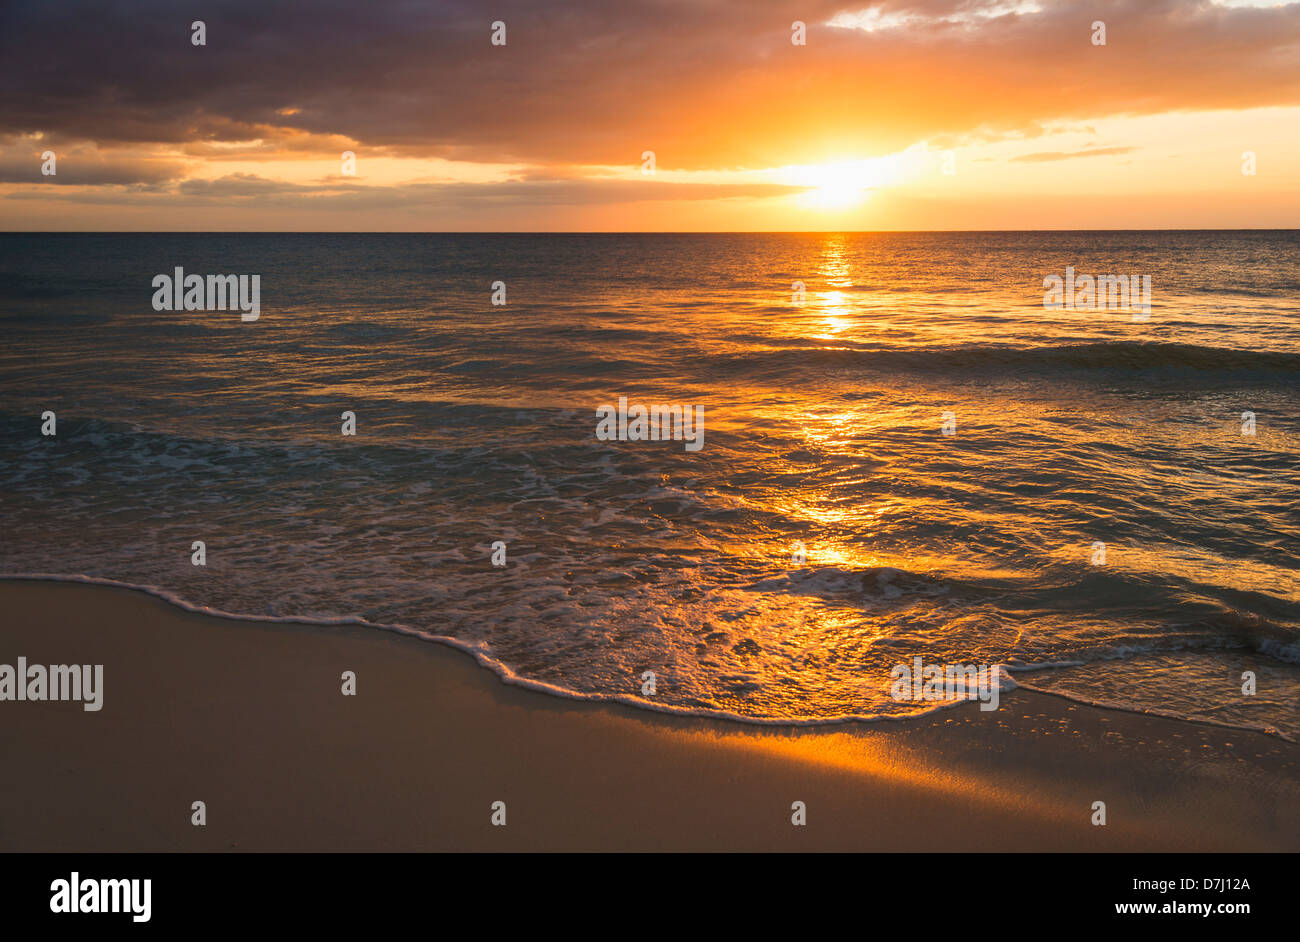 Jamaica, Sun setting over sea Stock Photo